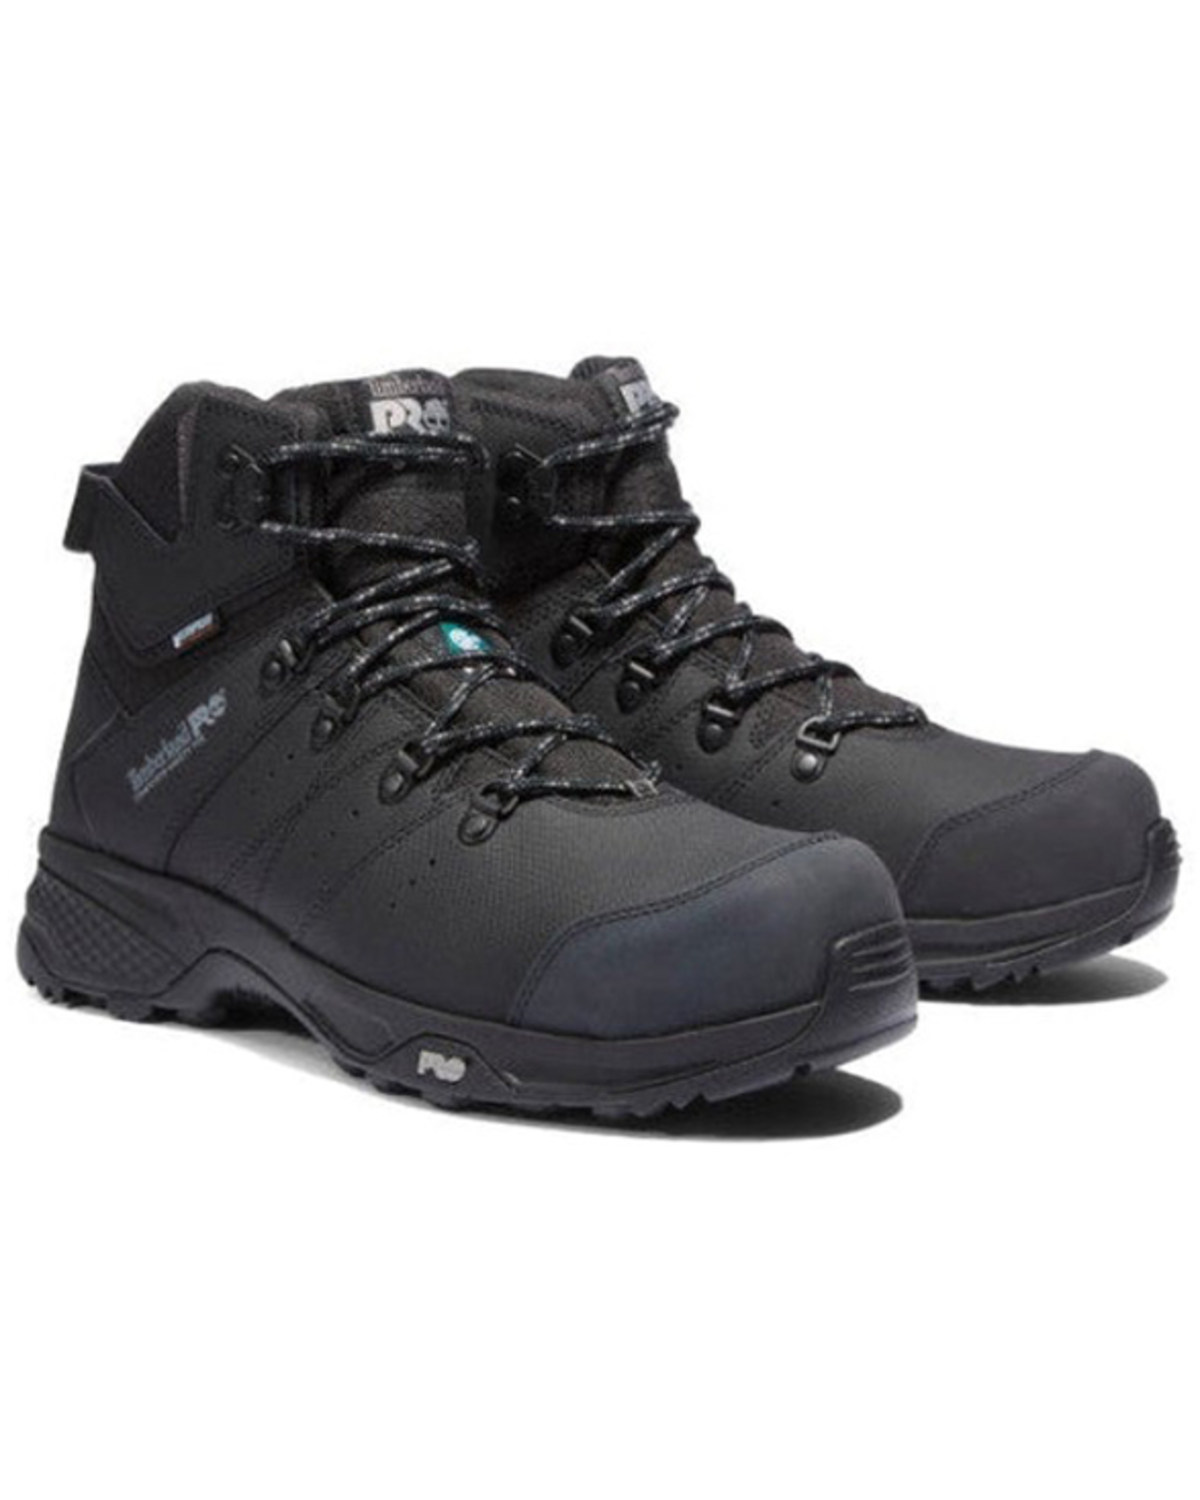 Timberland Men's Switchback Waterproof Hiker Work Boots - Composite Toe